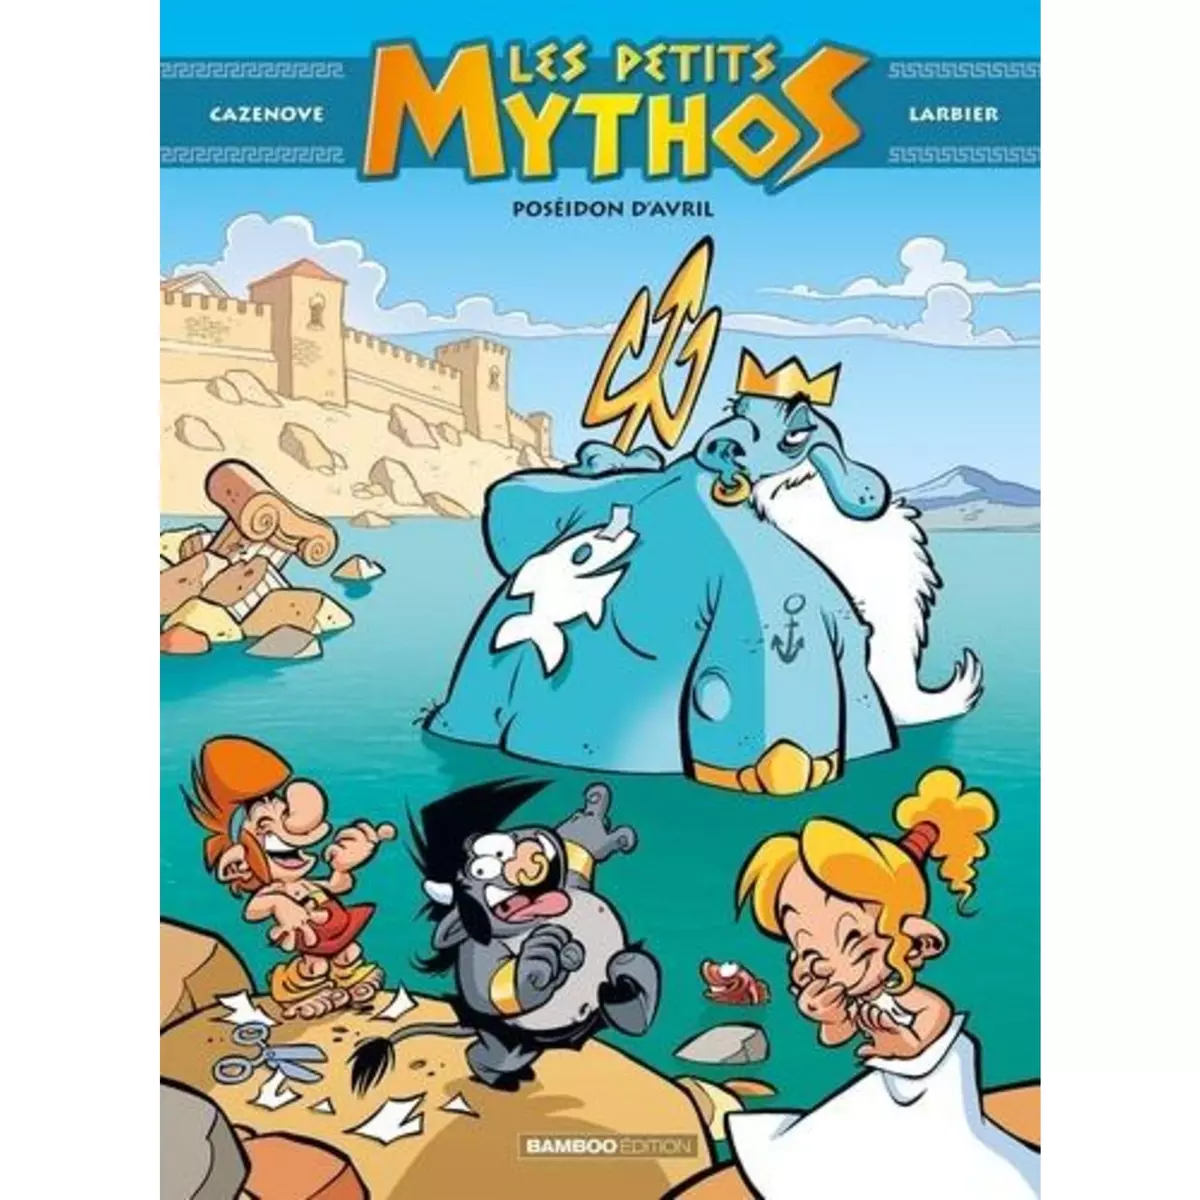  LES PETITS MYTHOS TOME 4 : POSEIDON D'AVRIL, Cazenove Christophe